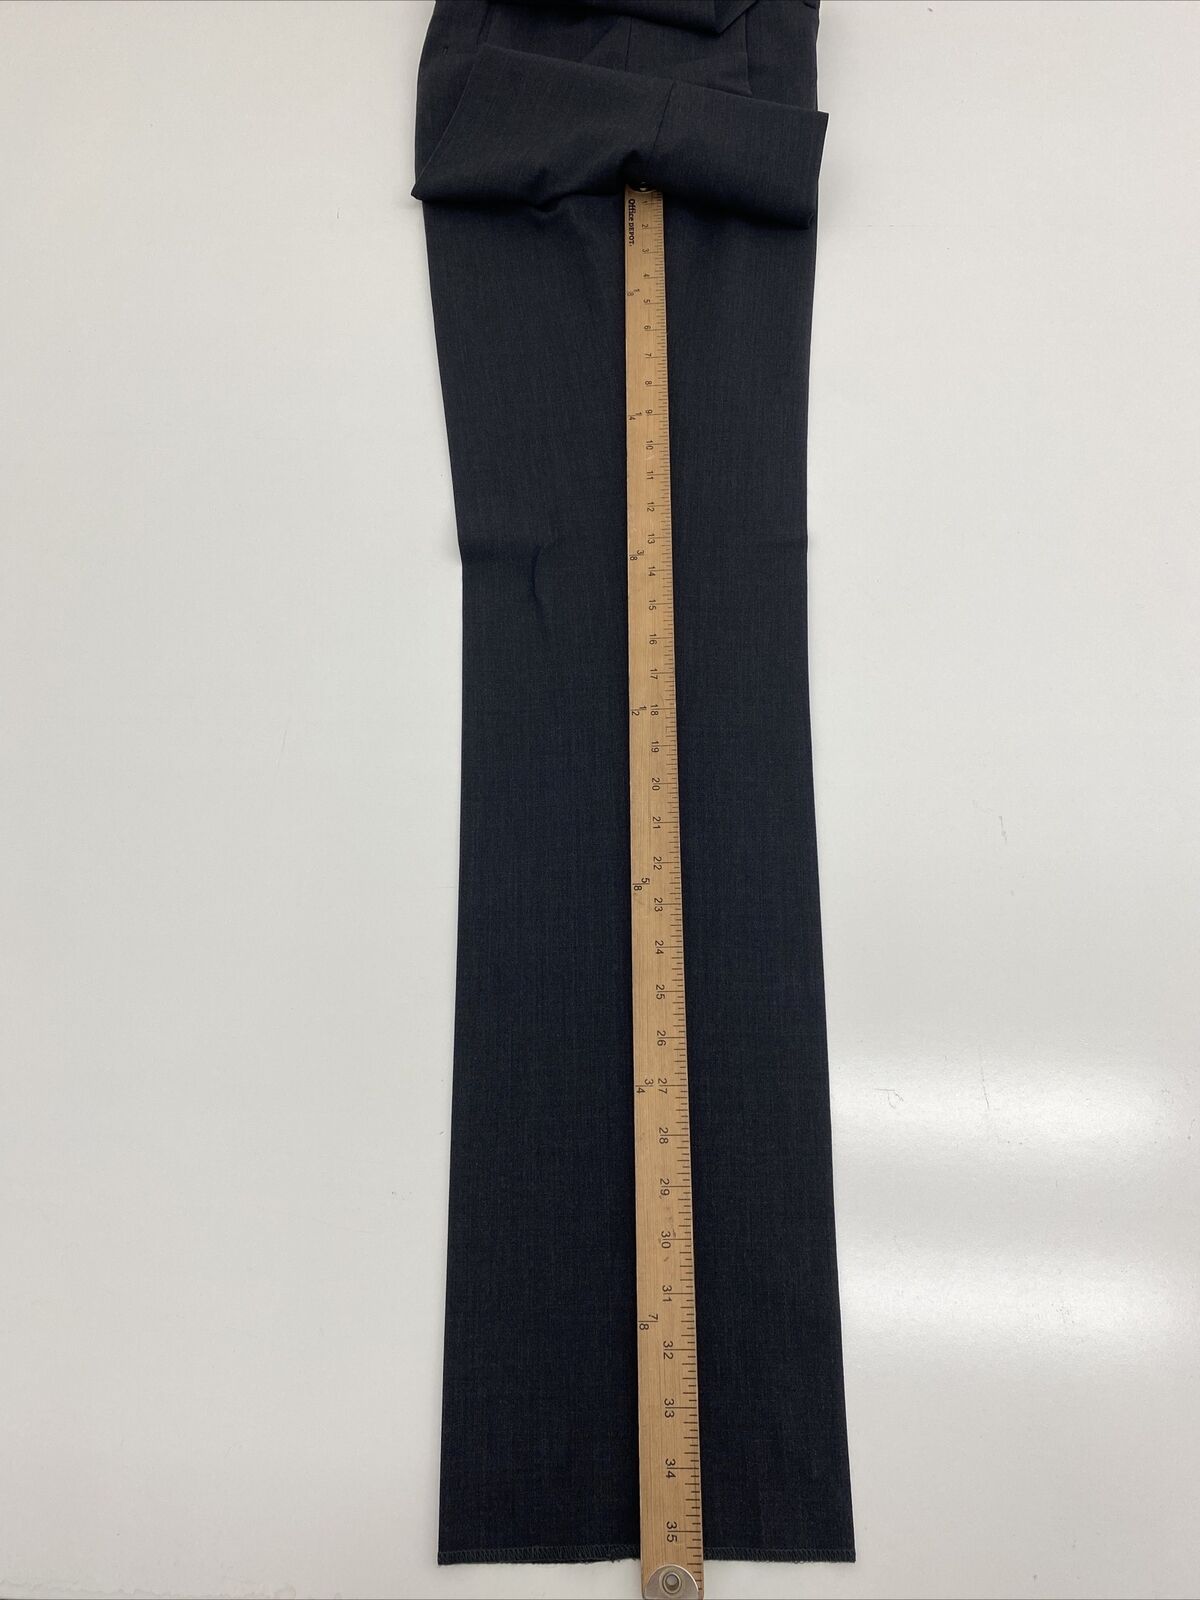 Giles & Jasper 2-Piece Solid Black Stretch Wool Suit at Von Maur